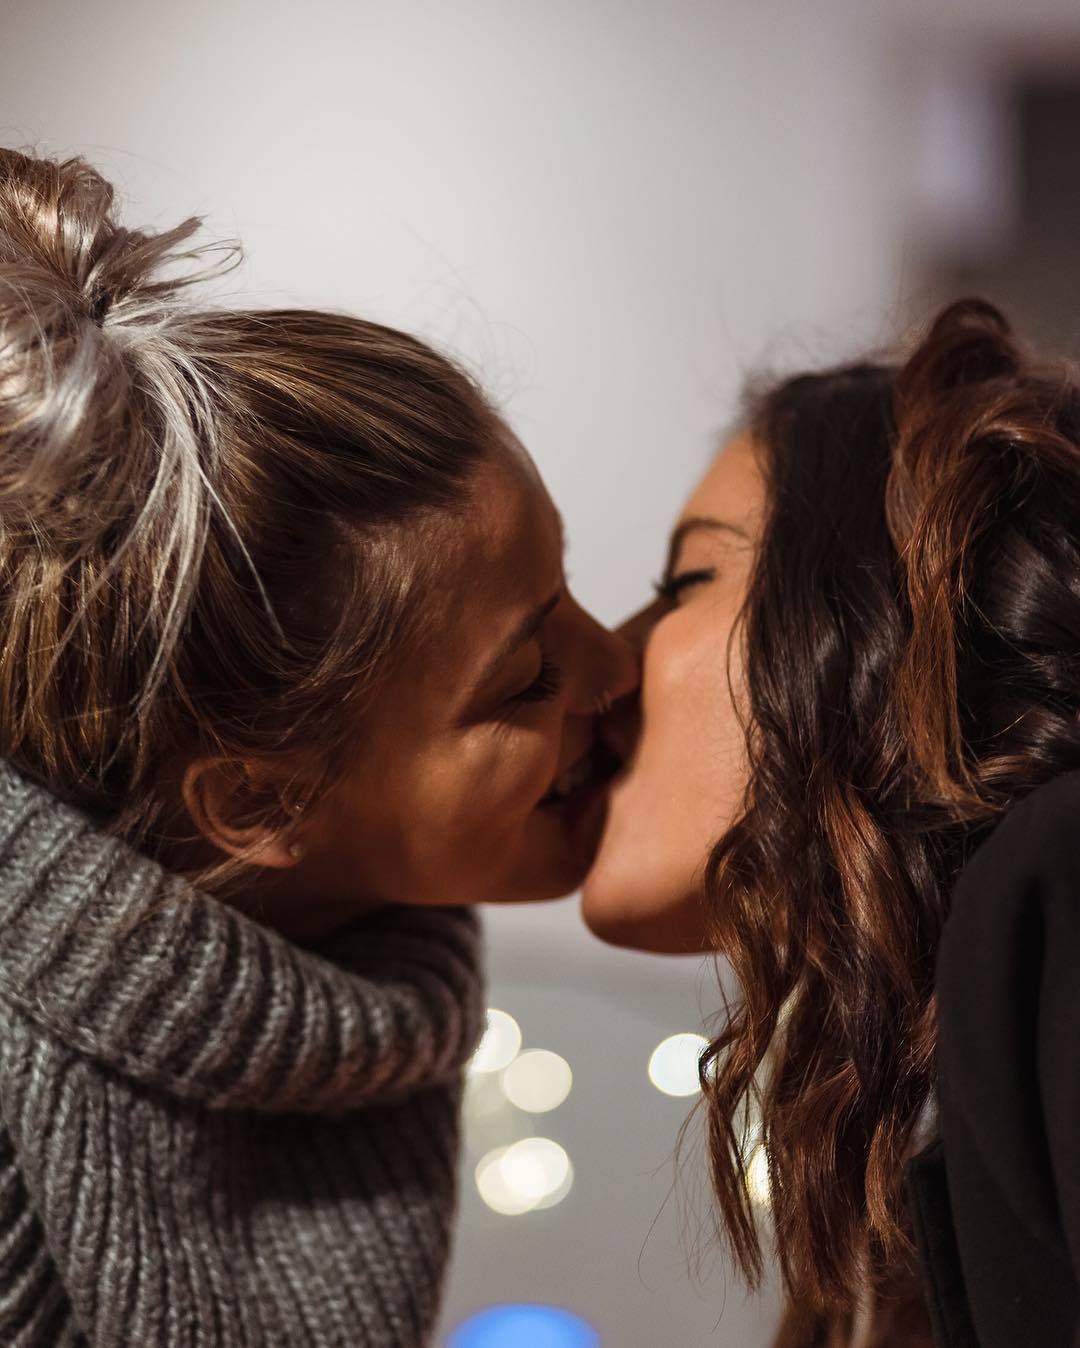 Lesbian новые. Любовь двух женщин. Поцелуй девушек. Девушки целуются. Красивый поцелуй двух девушек.